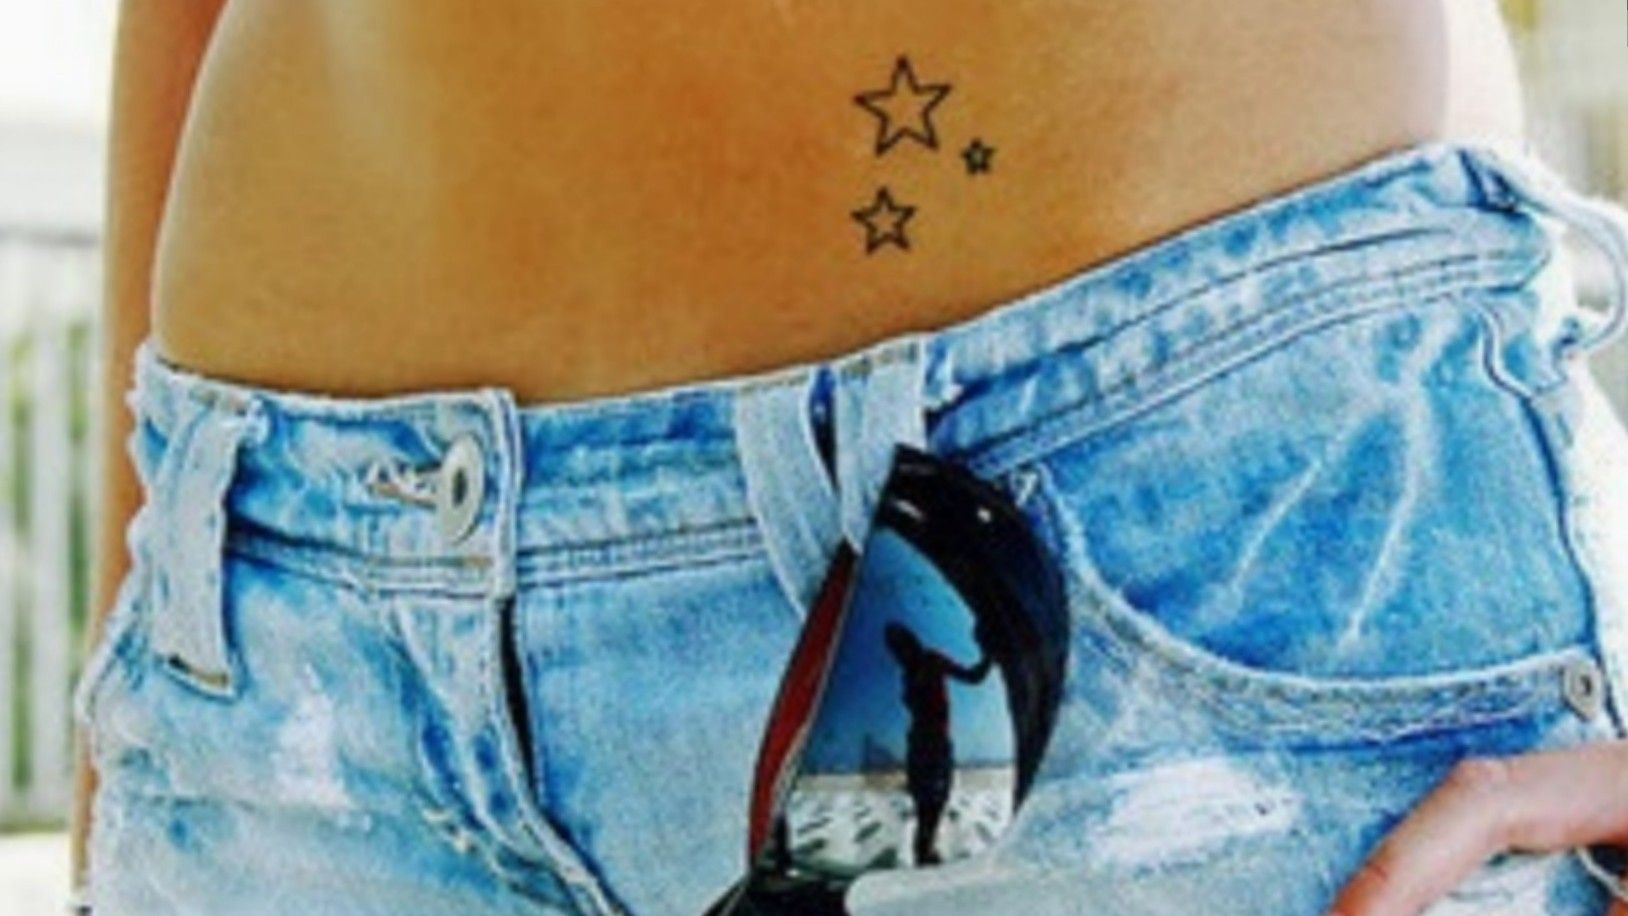 Star Hip Tattoos  tattoo art gallery